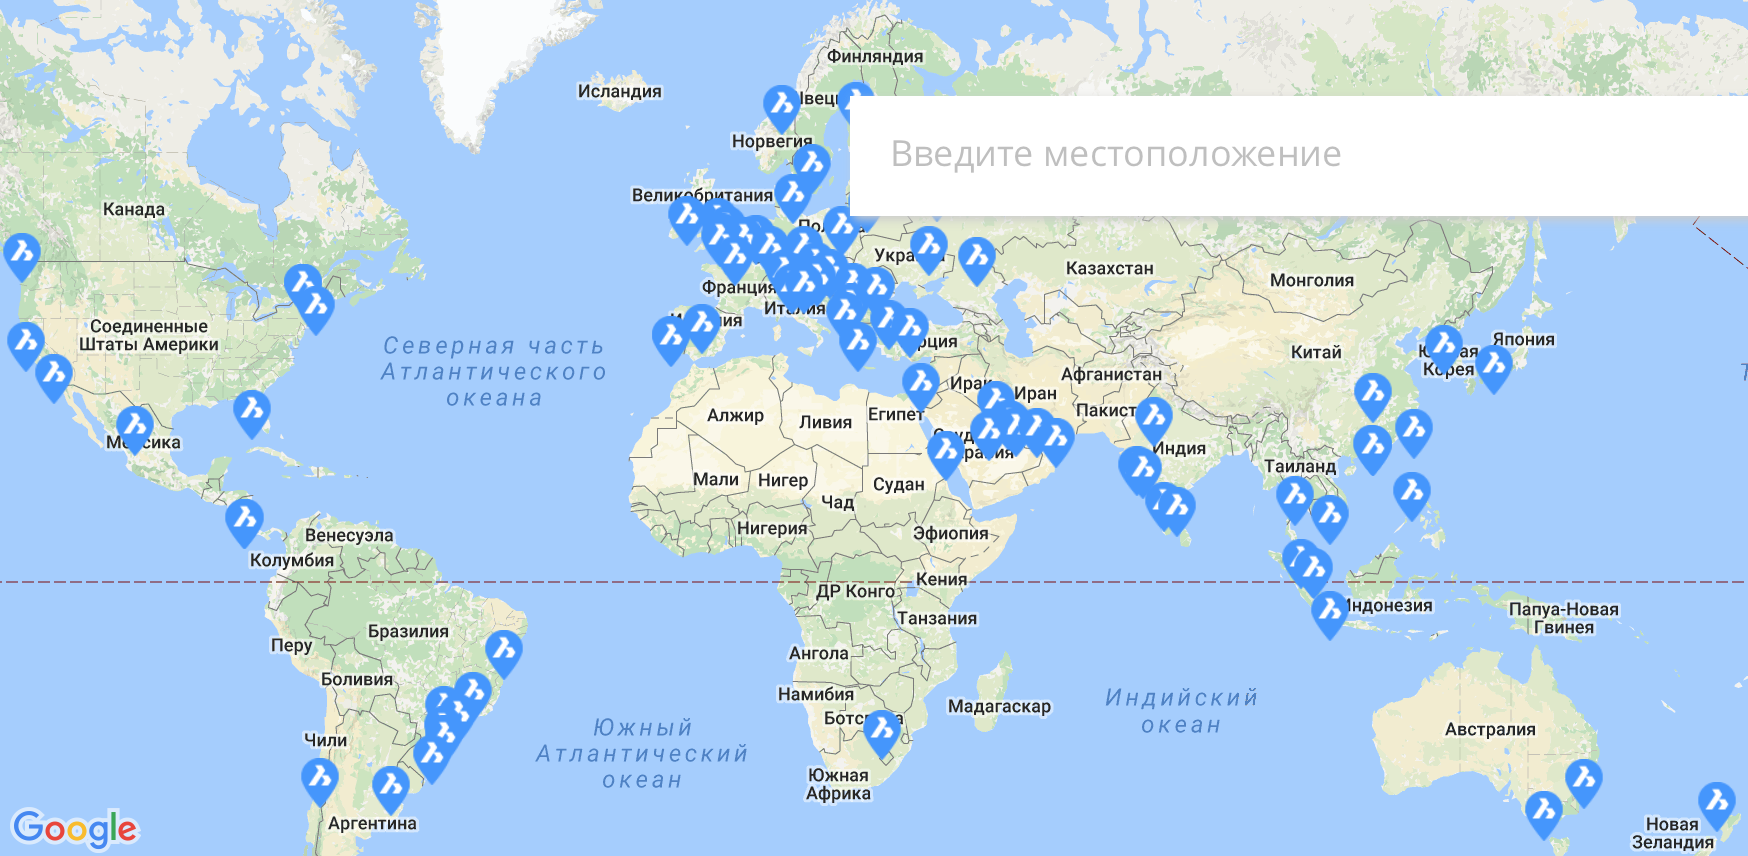 Точки продаж BricsCAD расположены по всему миру